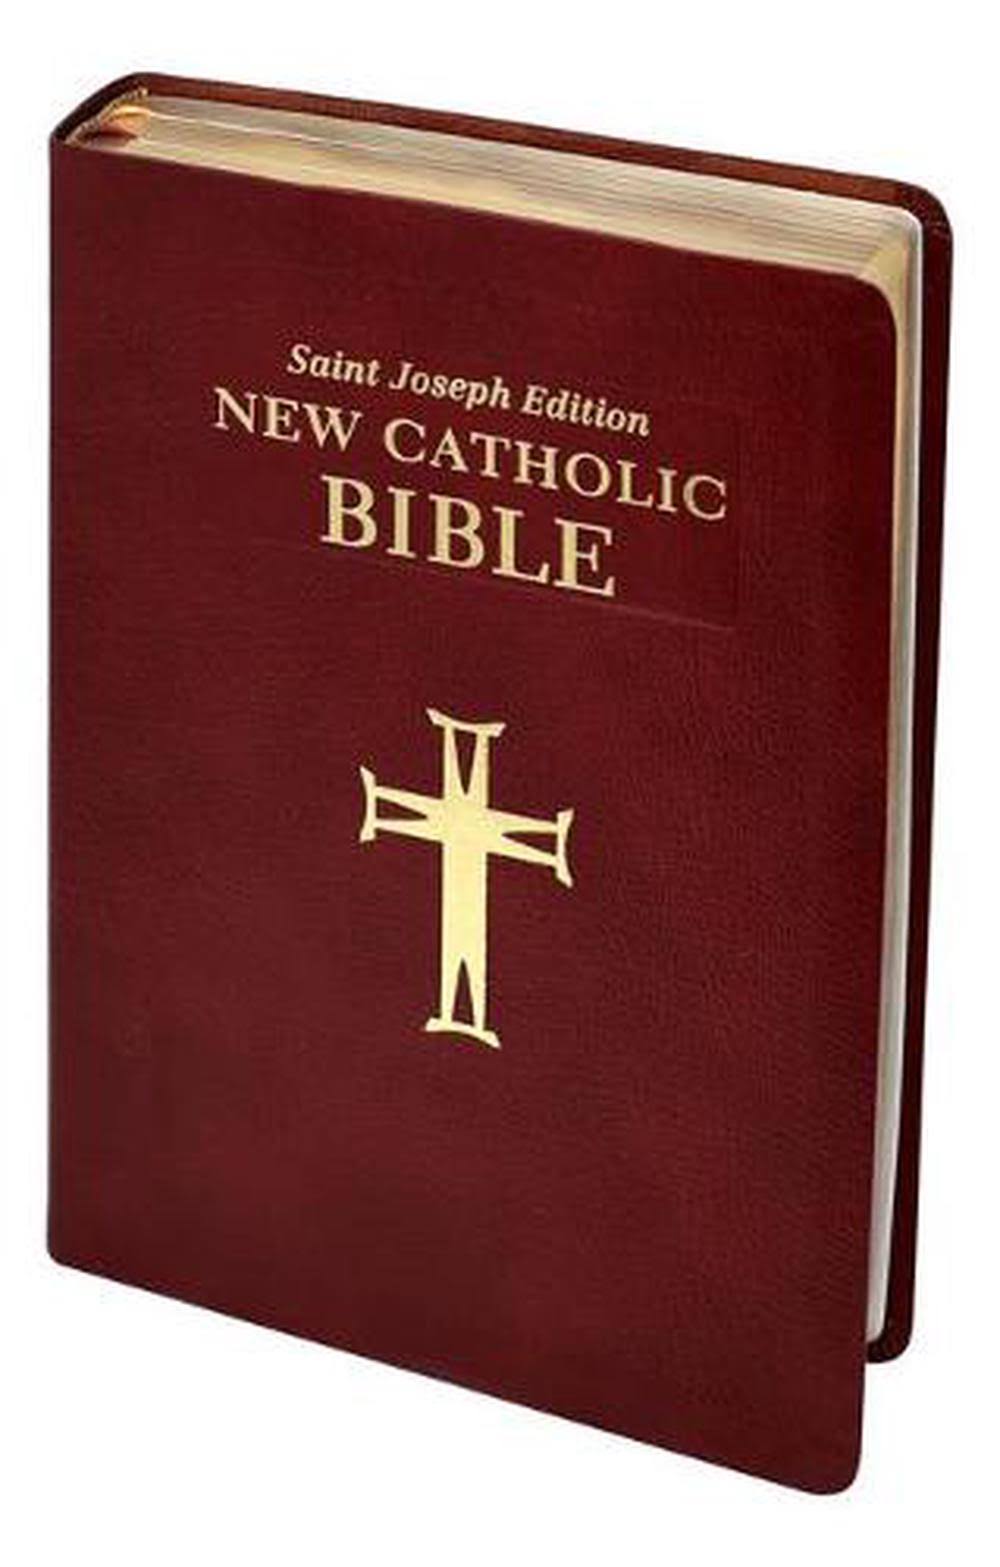 St. Joseph New Catholic Bible (Large by Catholic Book Publishing Corp